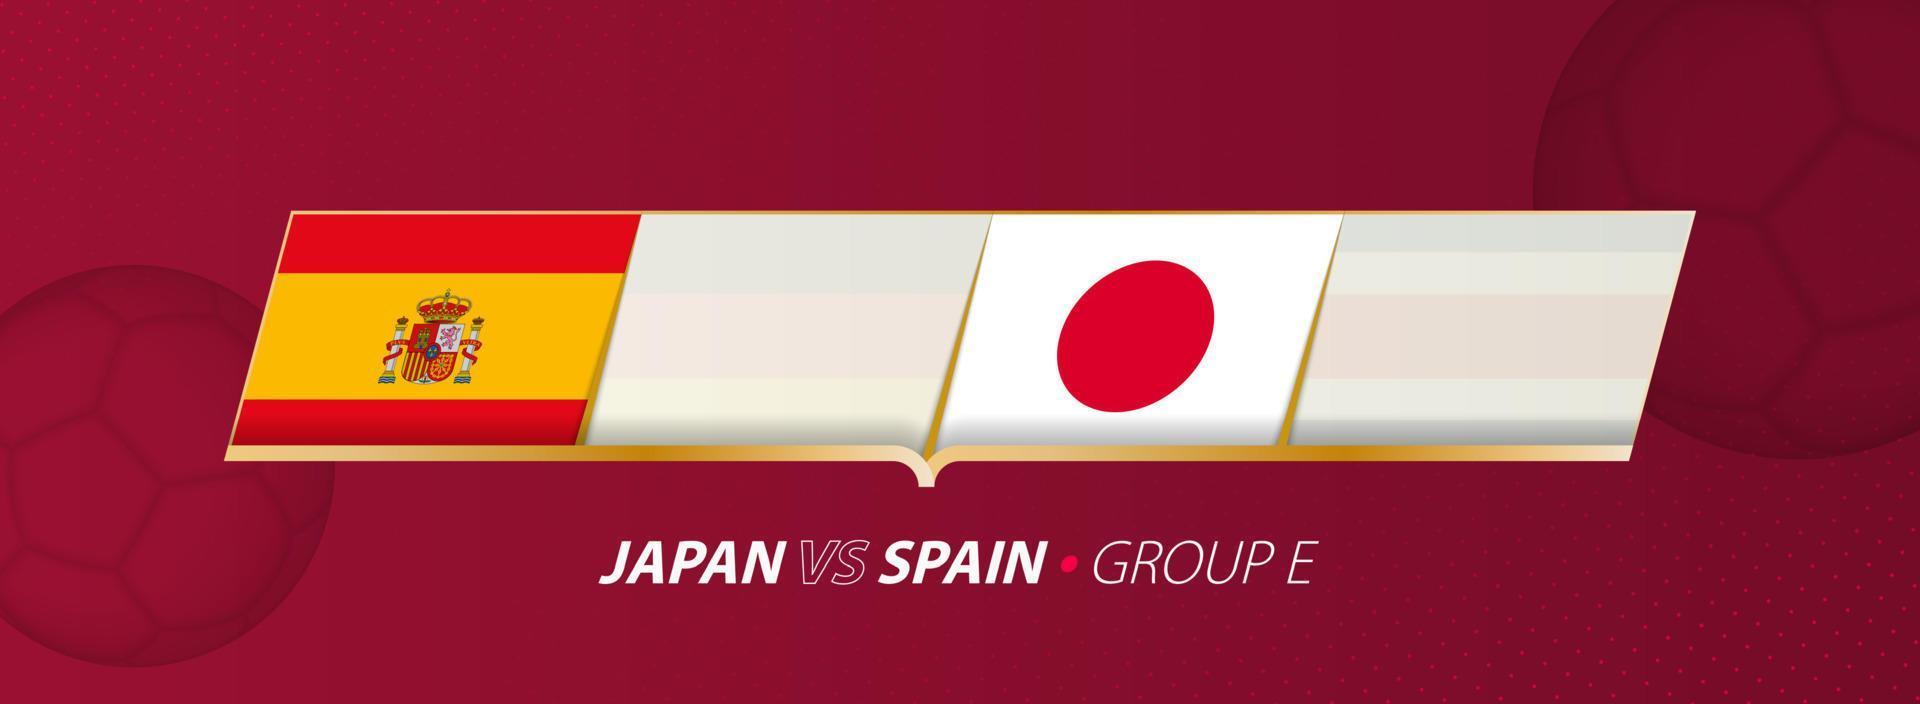 japão - espanha futebol jogo ilustração no grupo a. vetor